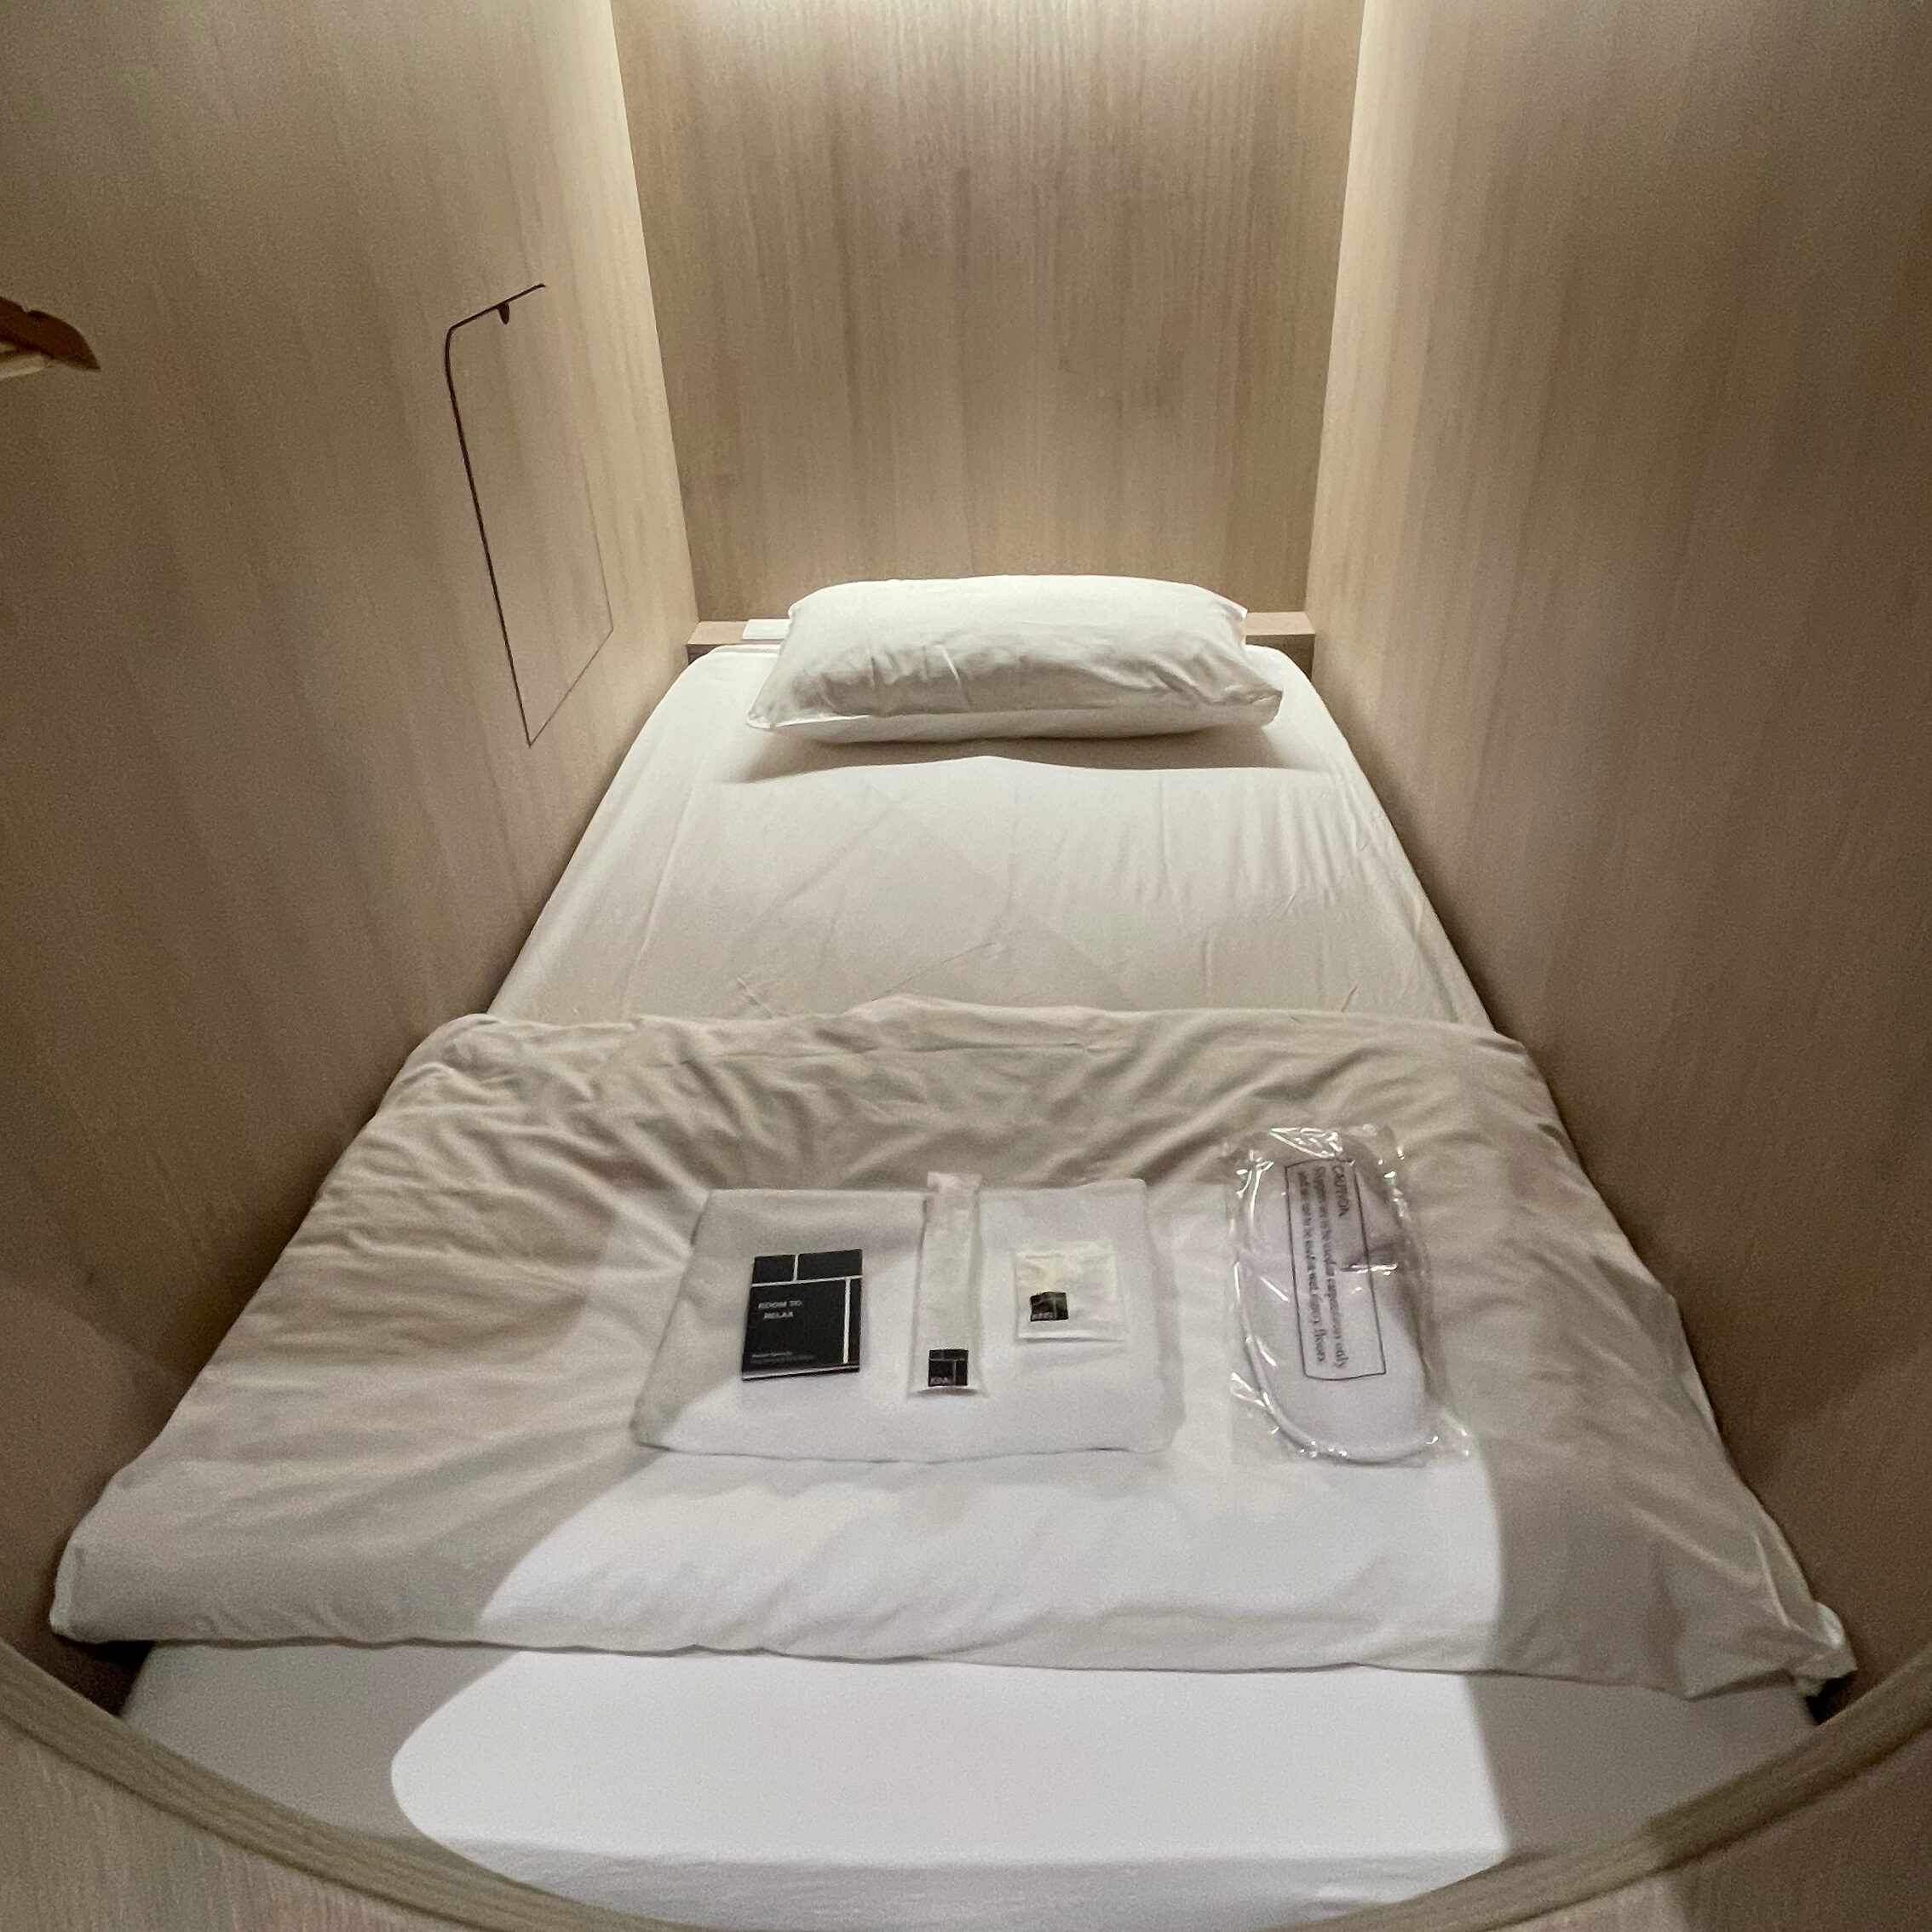 Capsule Hotel Bed